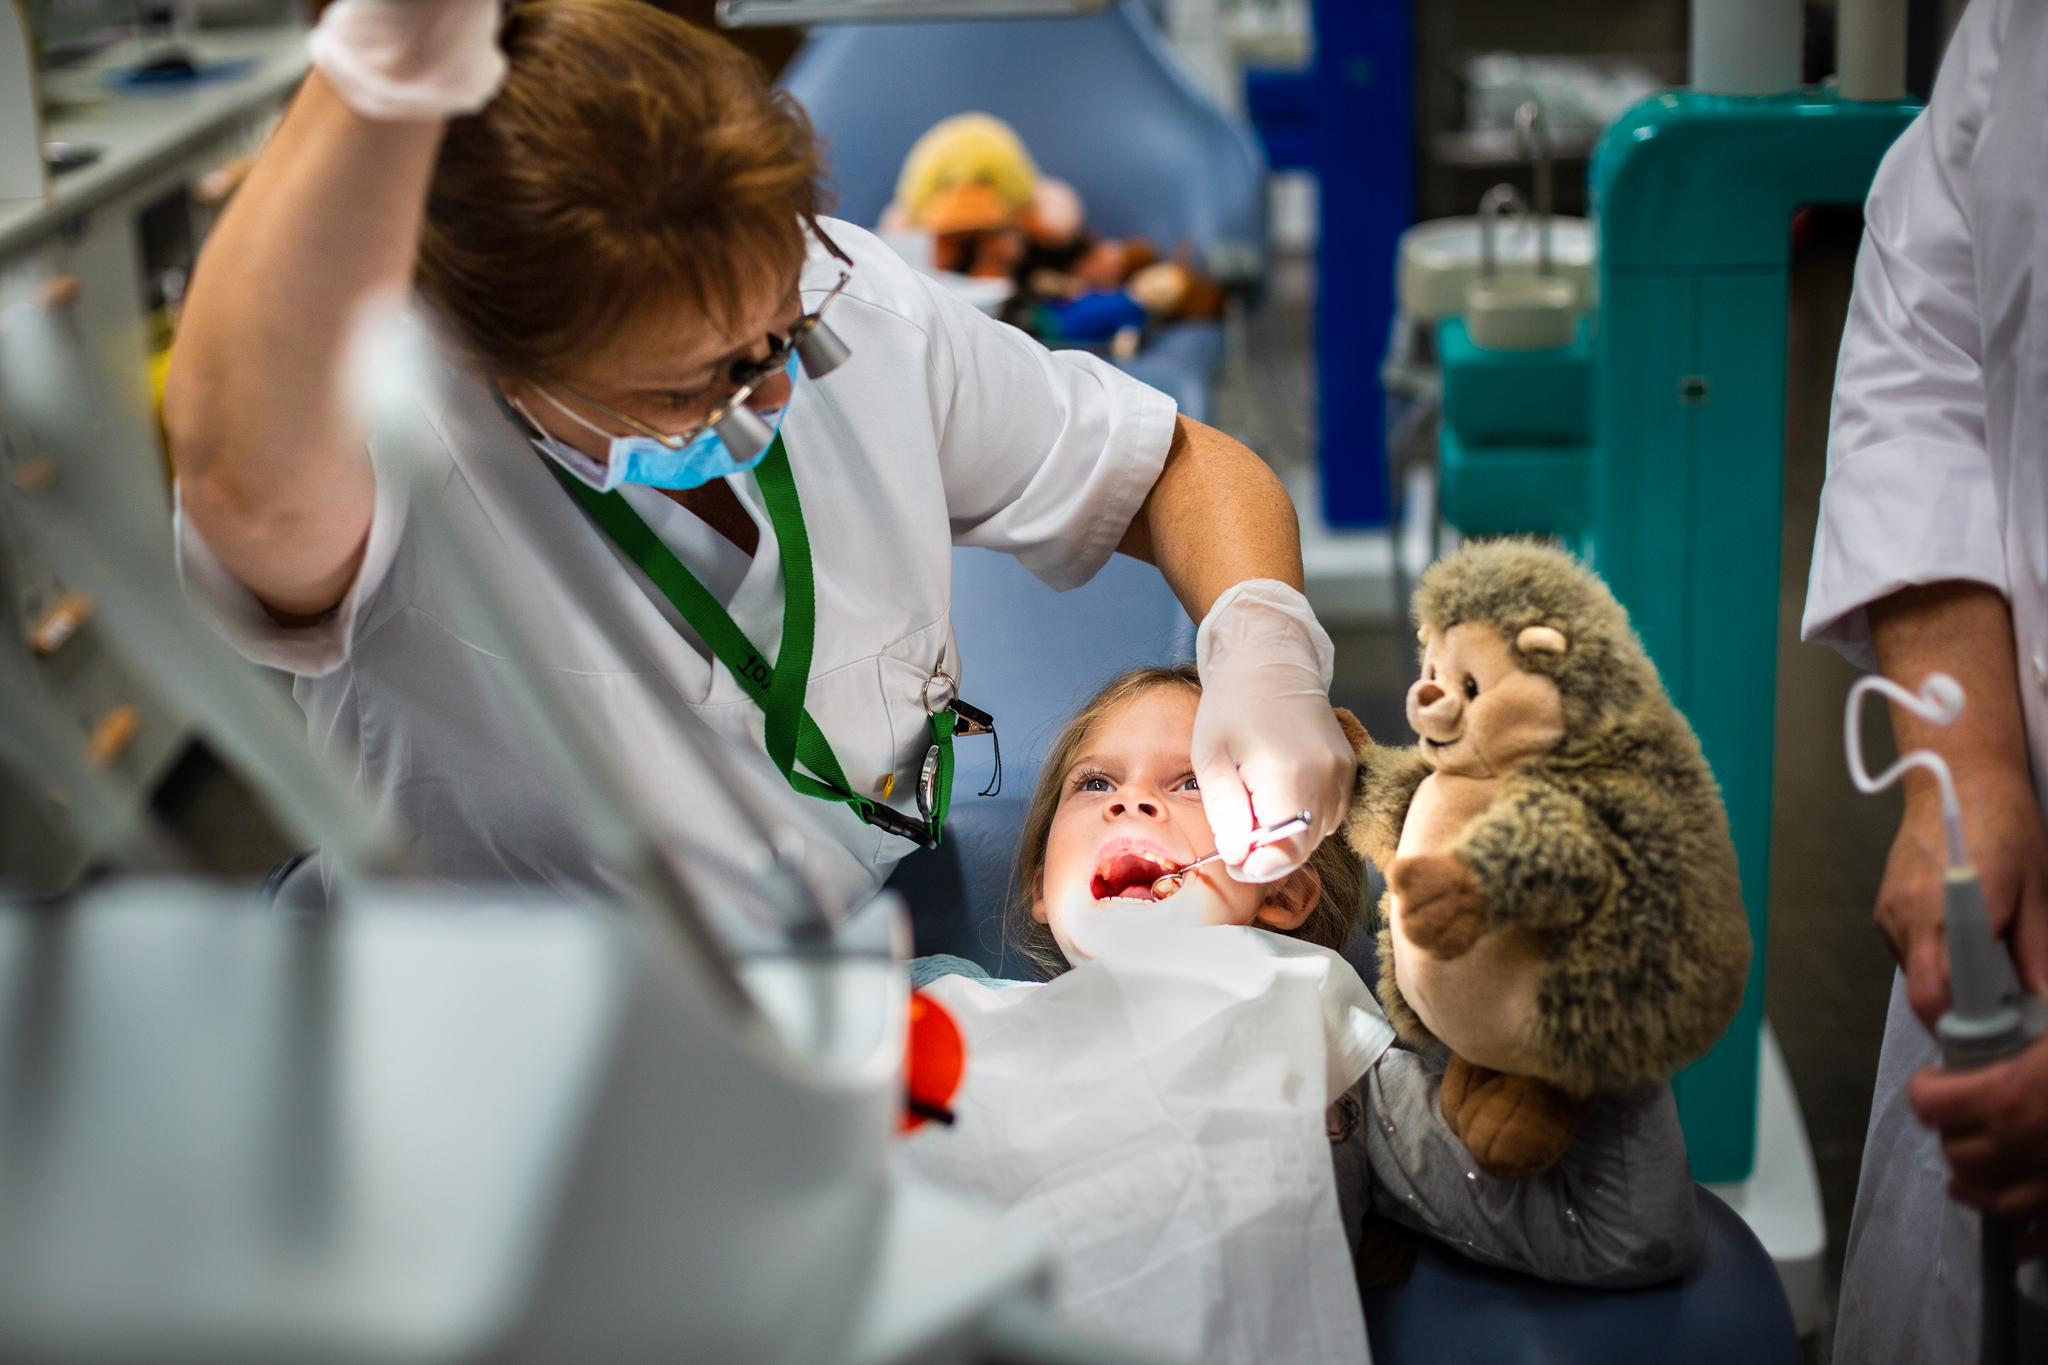  På knappe syv minutter sørger tannlege Tove Wigen for å forebygge at Linnea får hull i en seksårsjeksel som nesten har brutt frem. Metoden heter fissurforsegling. Det er ett av tiltakene mot karies på barn og unge som har best dokumentert forebyggende effekt, ifølge Helsedirektoratet.